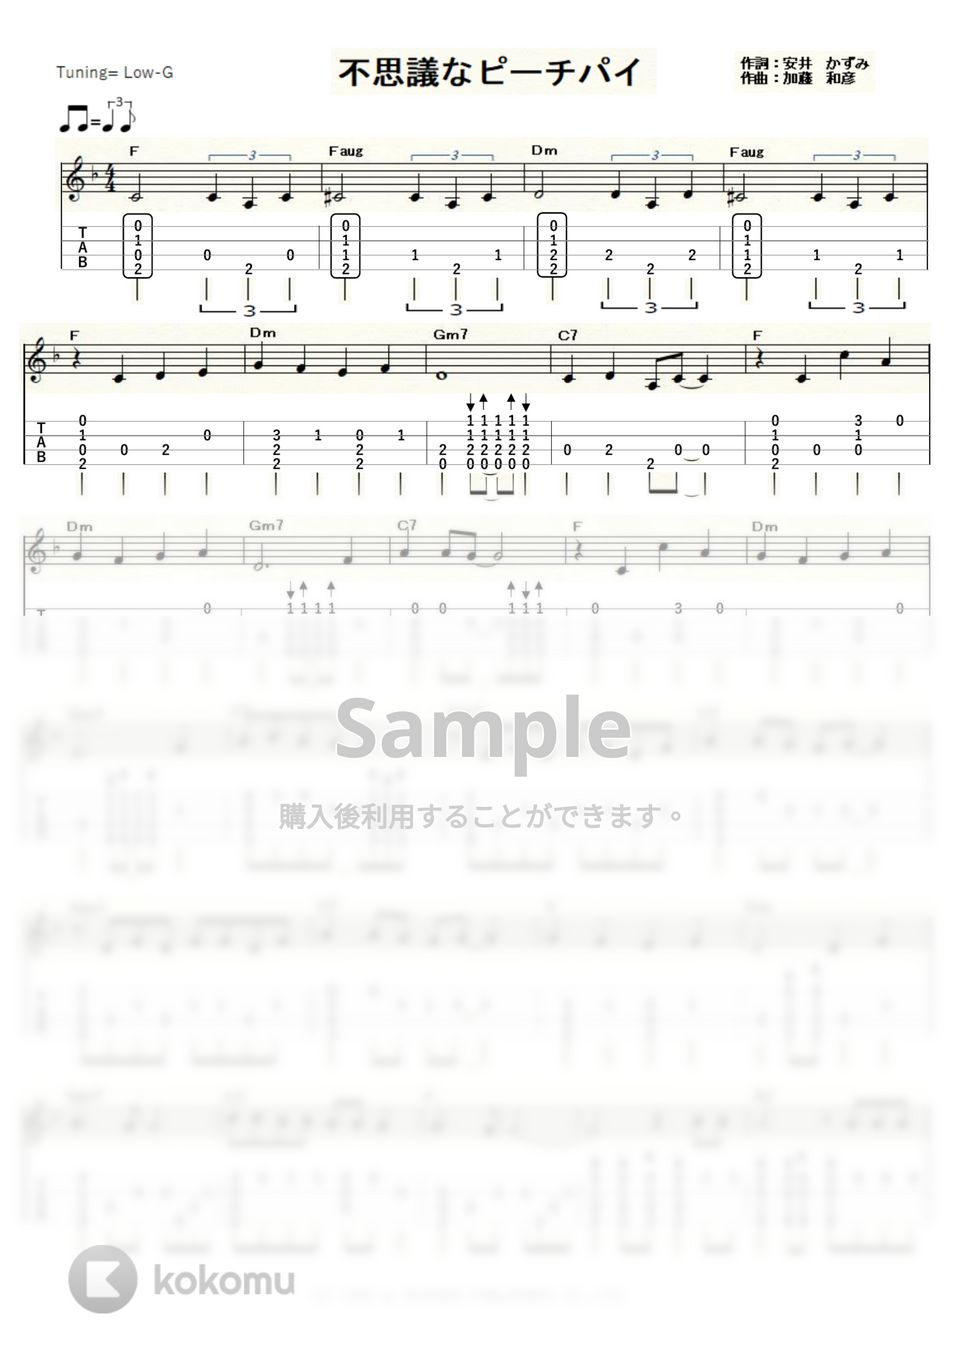 竹内まりや - 不思議なピーチパイ (ｳｸﾚﾚｿﾛ / Low-G / 中級) by ukulelepapa